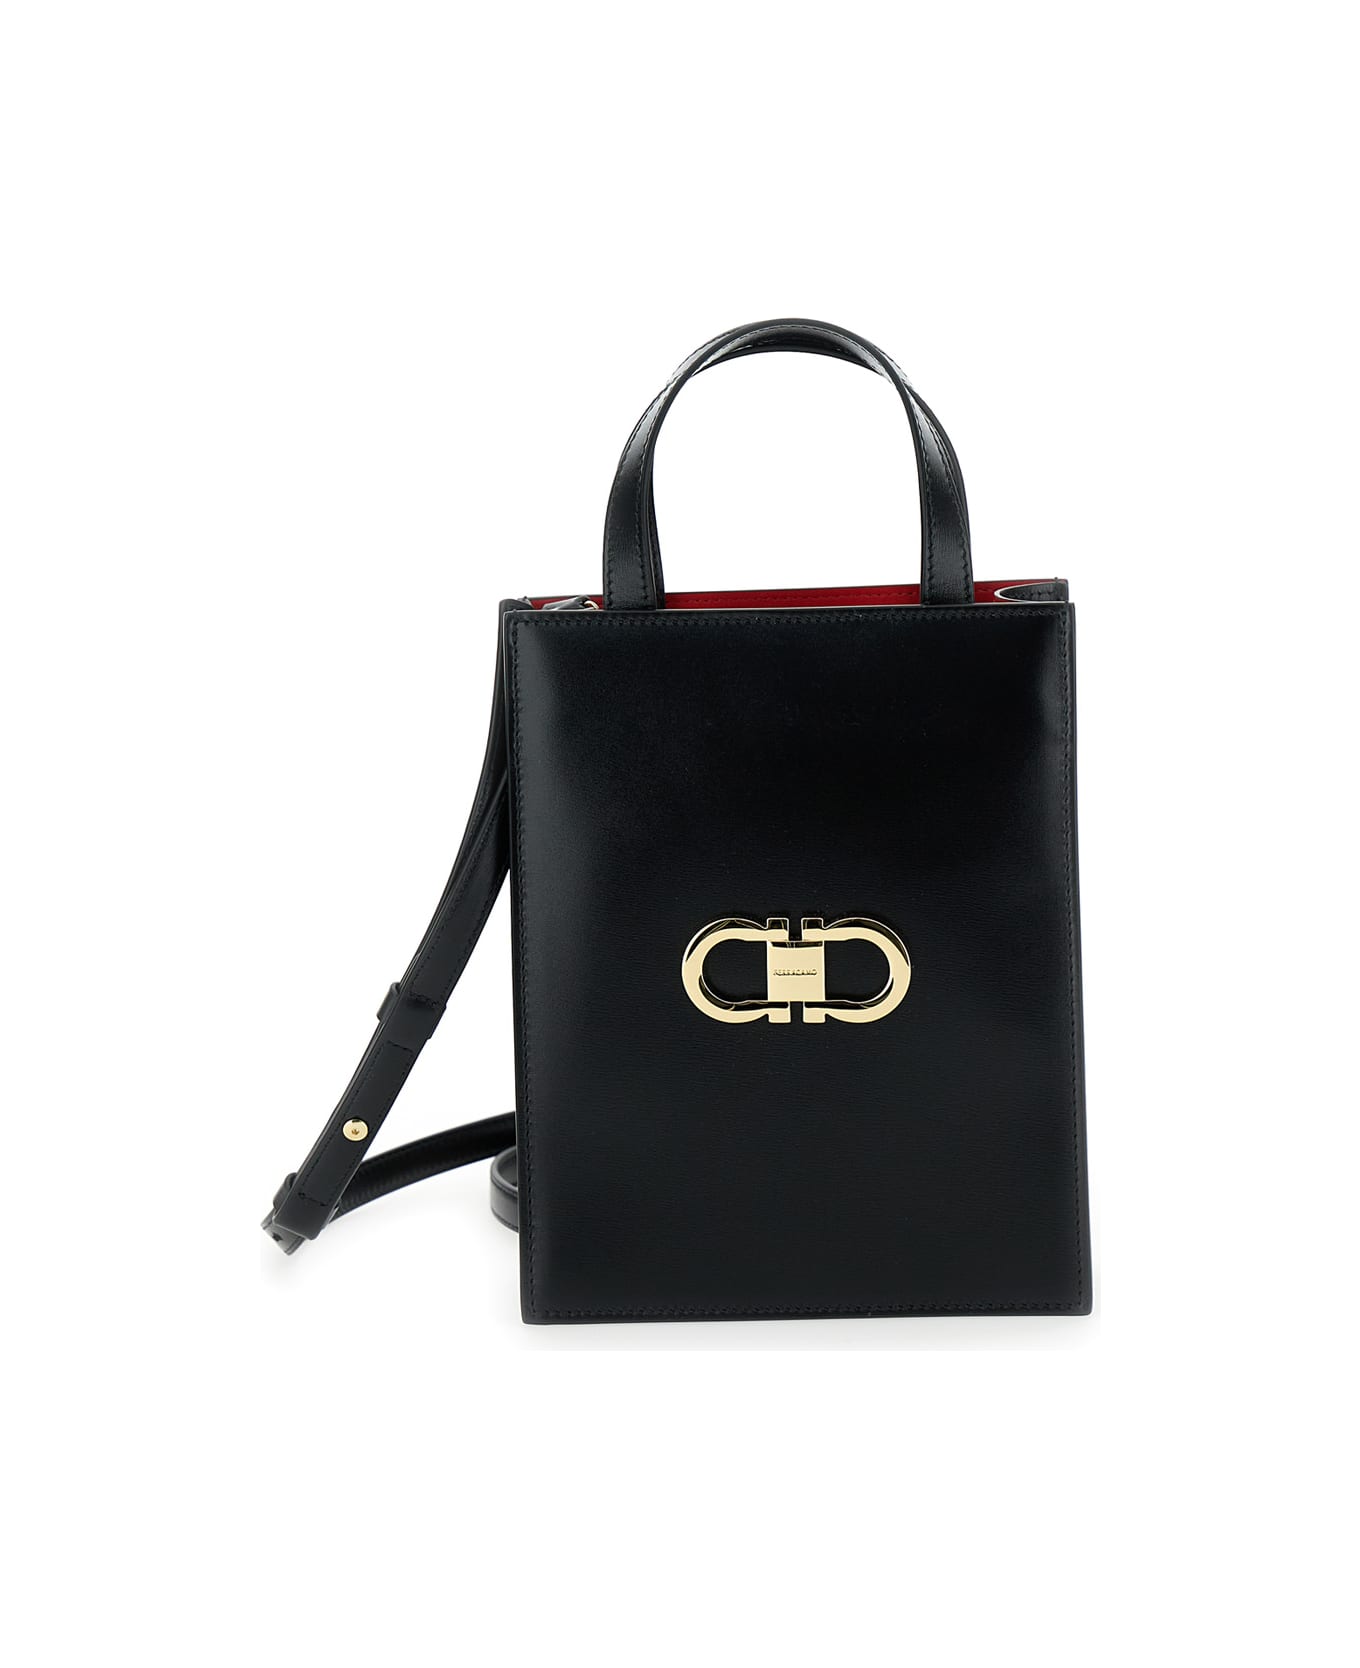 Ferragamo Black Crossbody Bag With Logo Gancini In Leather Woman - Black